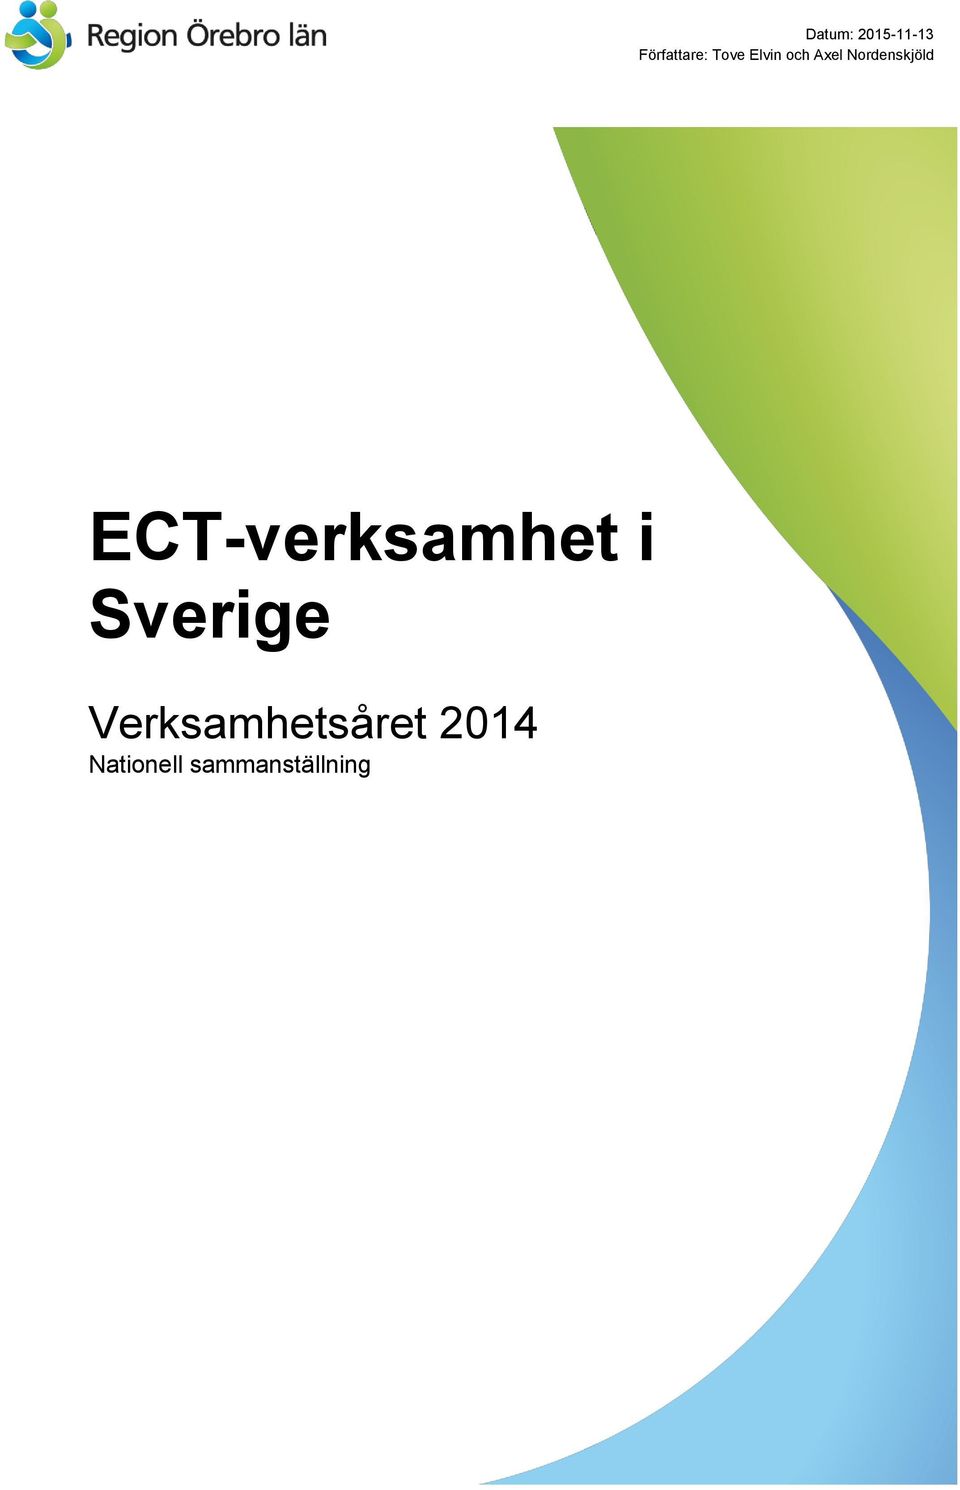 ECT-verksamhet i Sverige